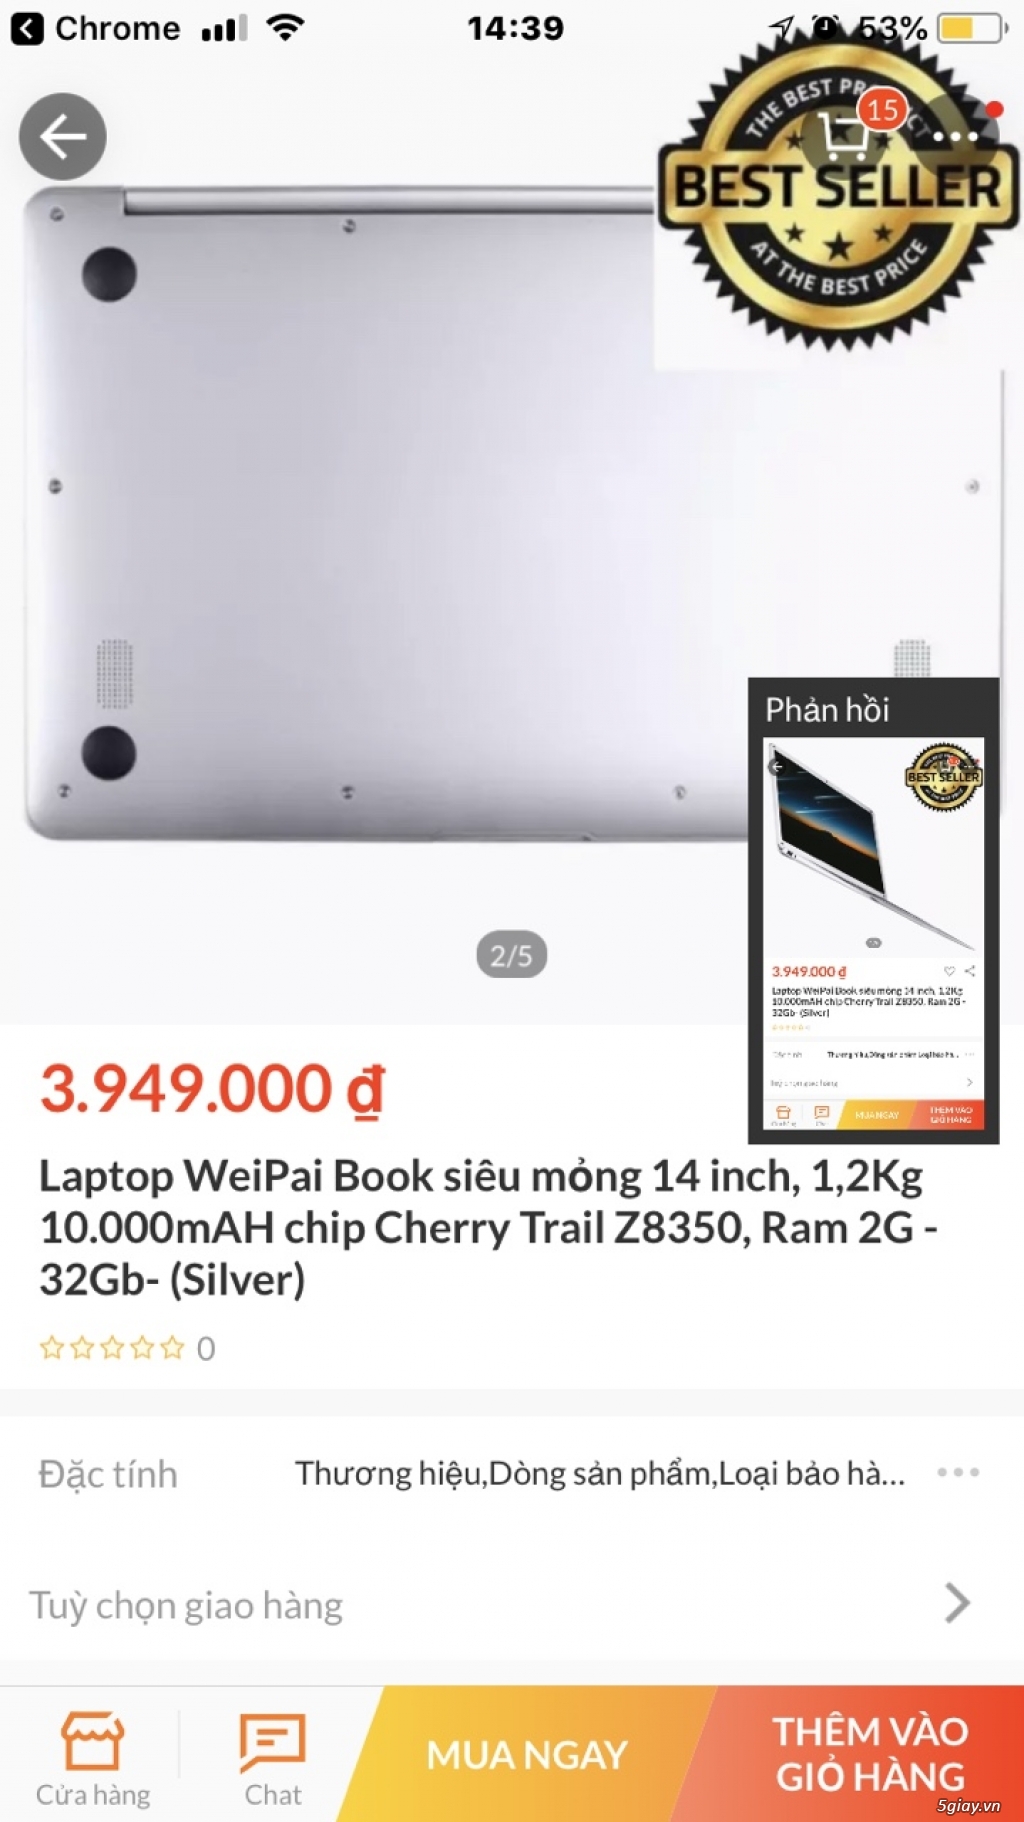 Cần bán Laptop WeiPai Book siêu mỏng 14 inch, 1,2Kg 10.000mAH - 1